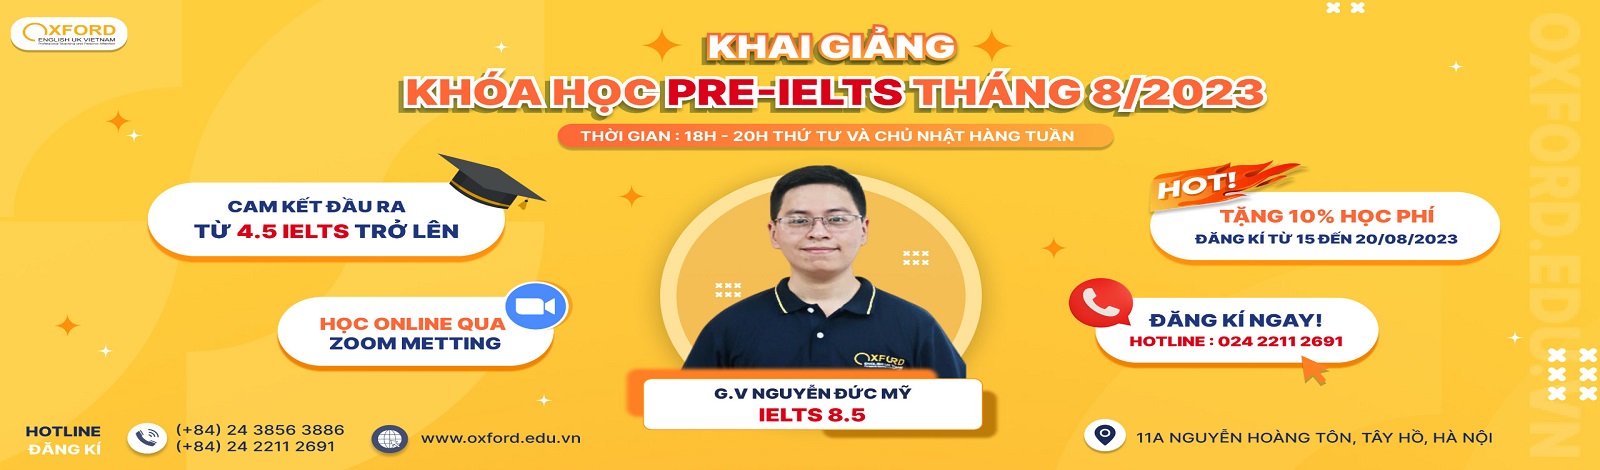 Những cách dùng của question tag must khi nói tiếng Việt